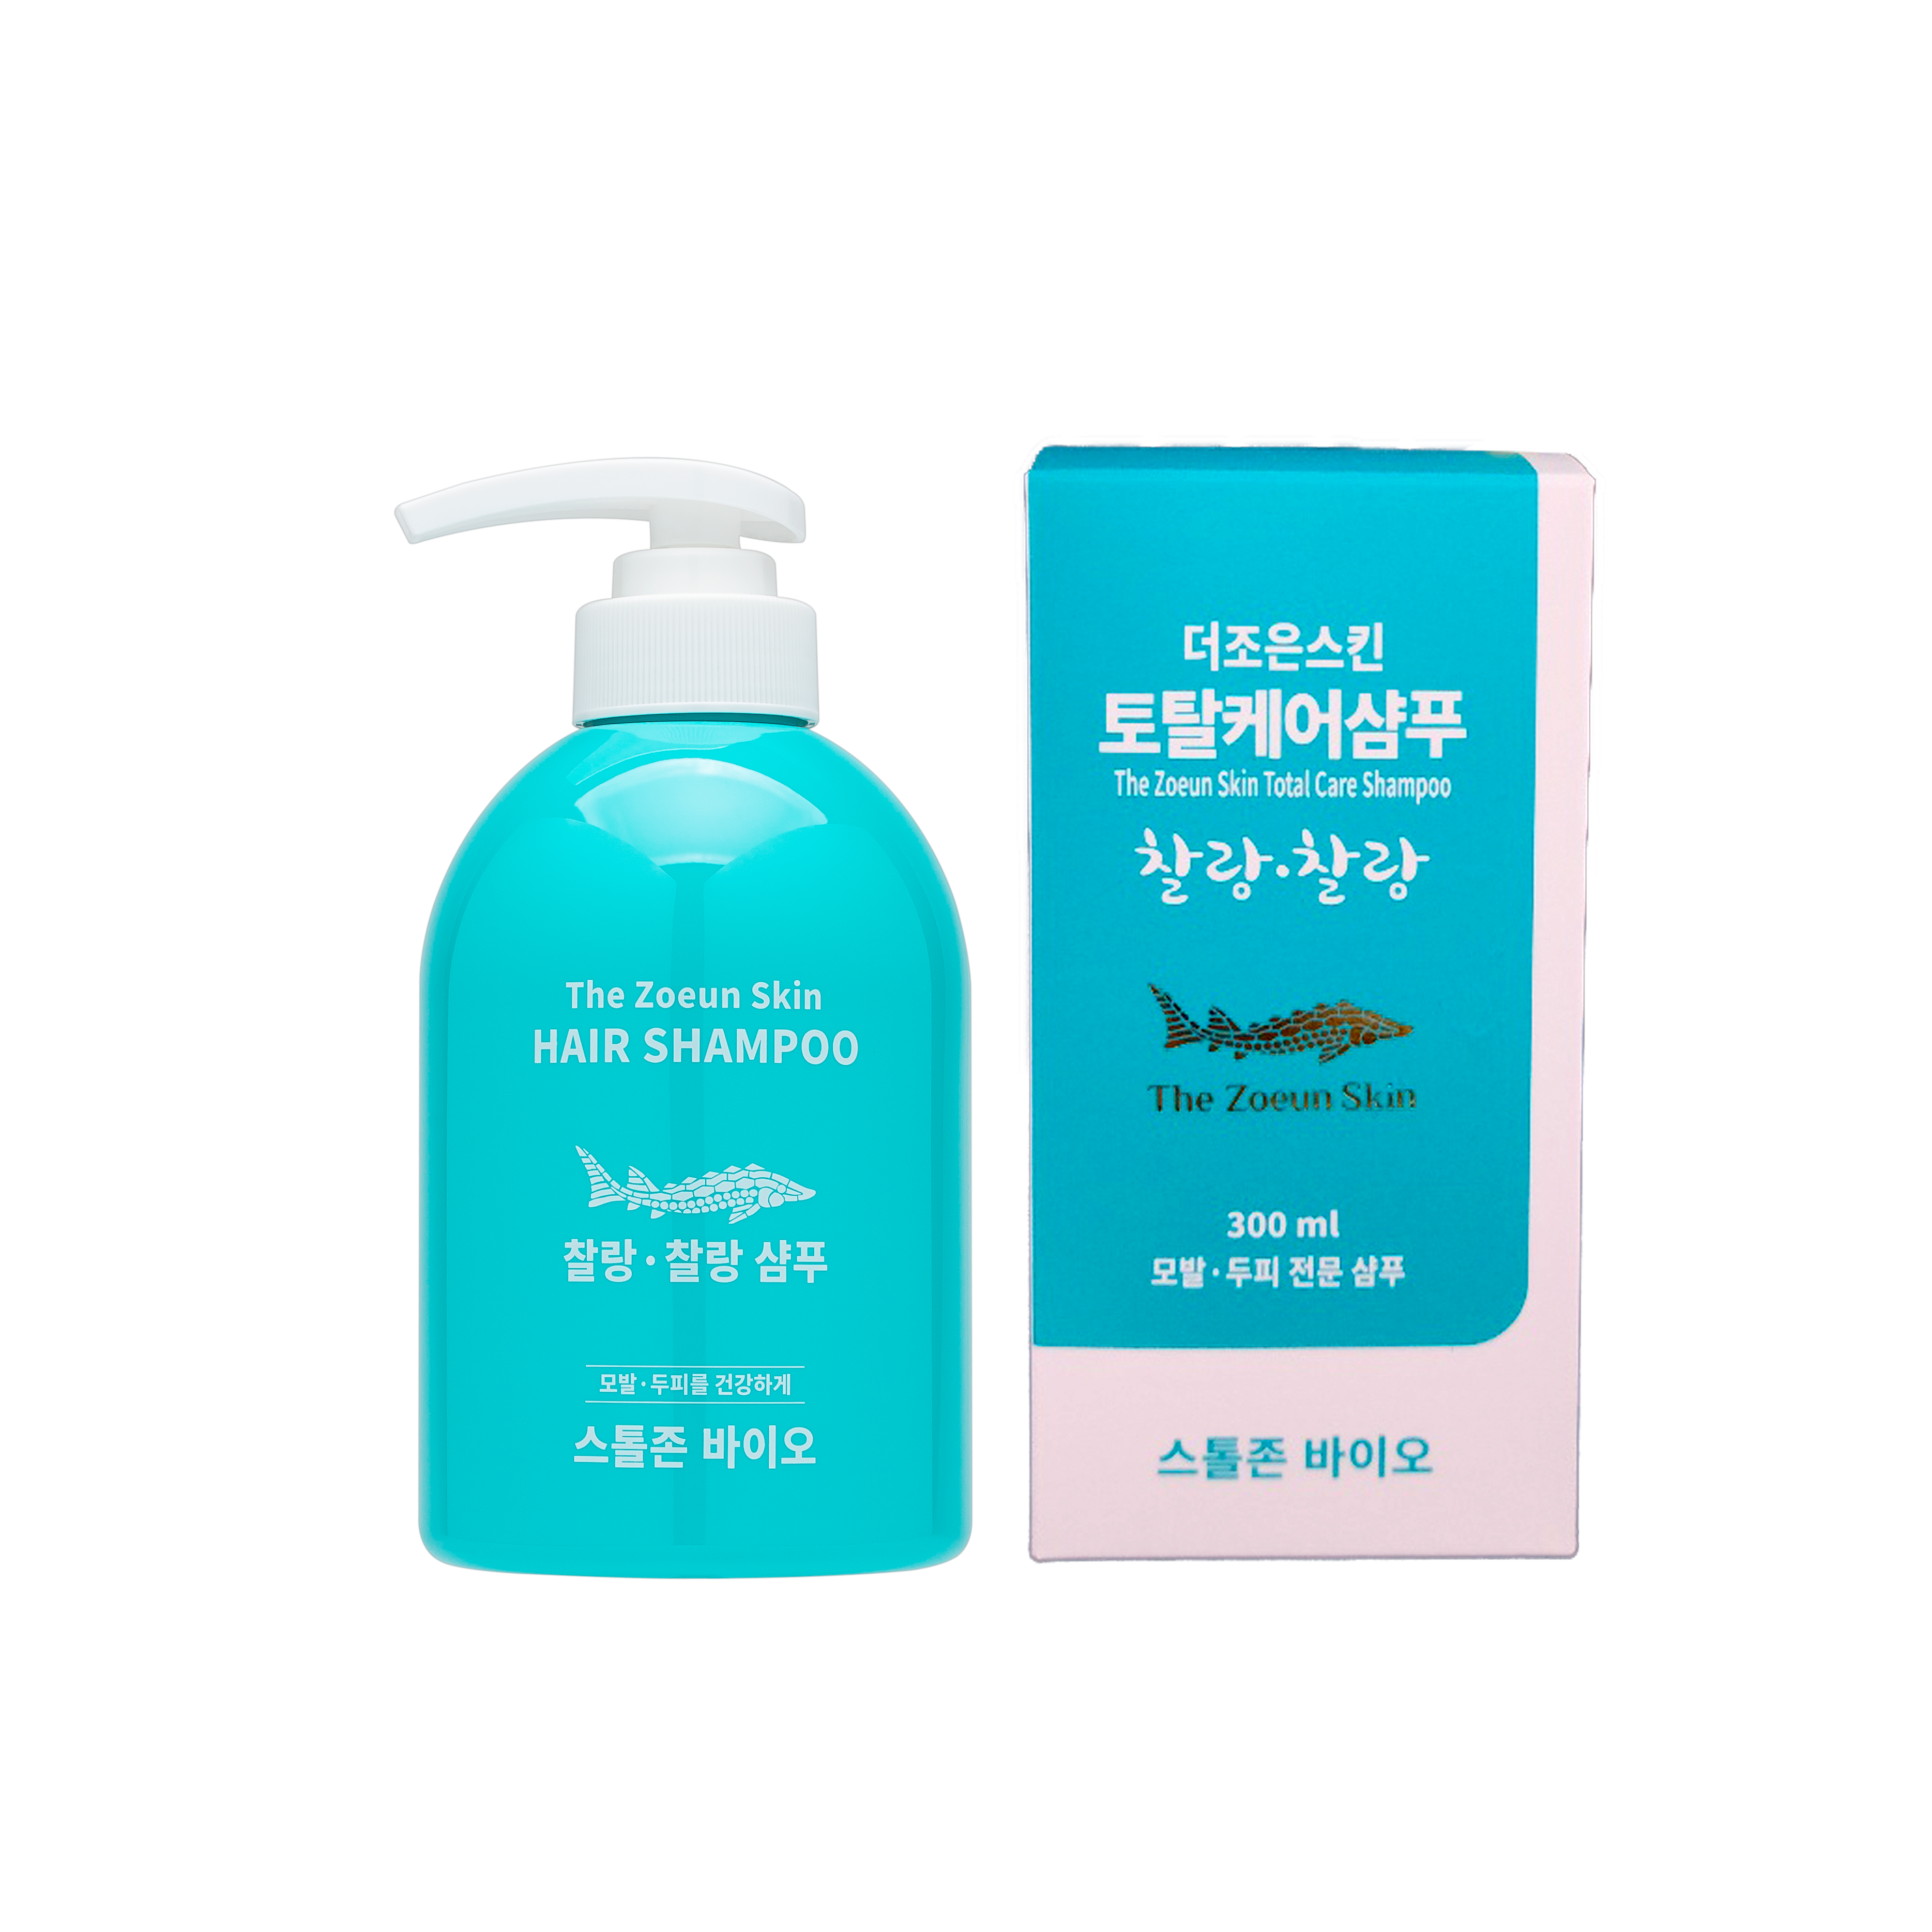 The Zoeun Skin Total Care Shampoo Chalang-chalang image